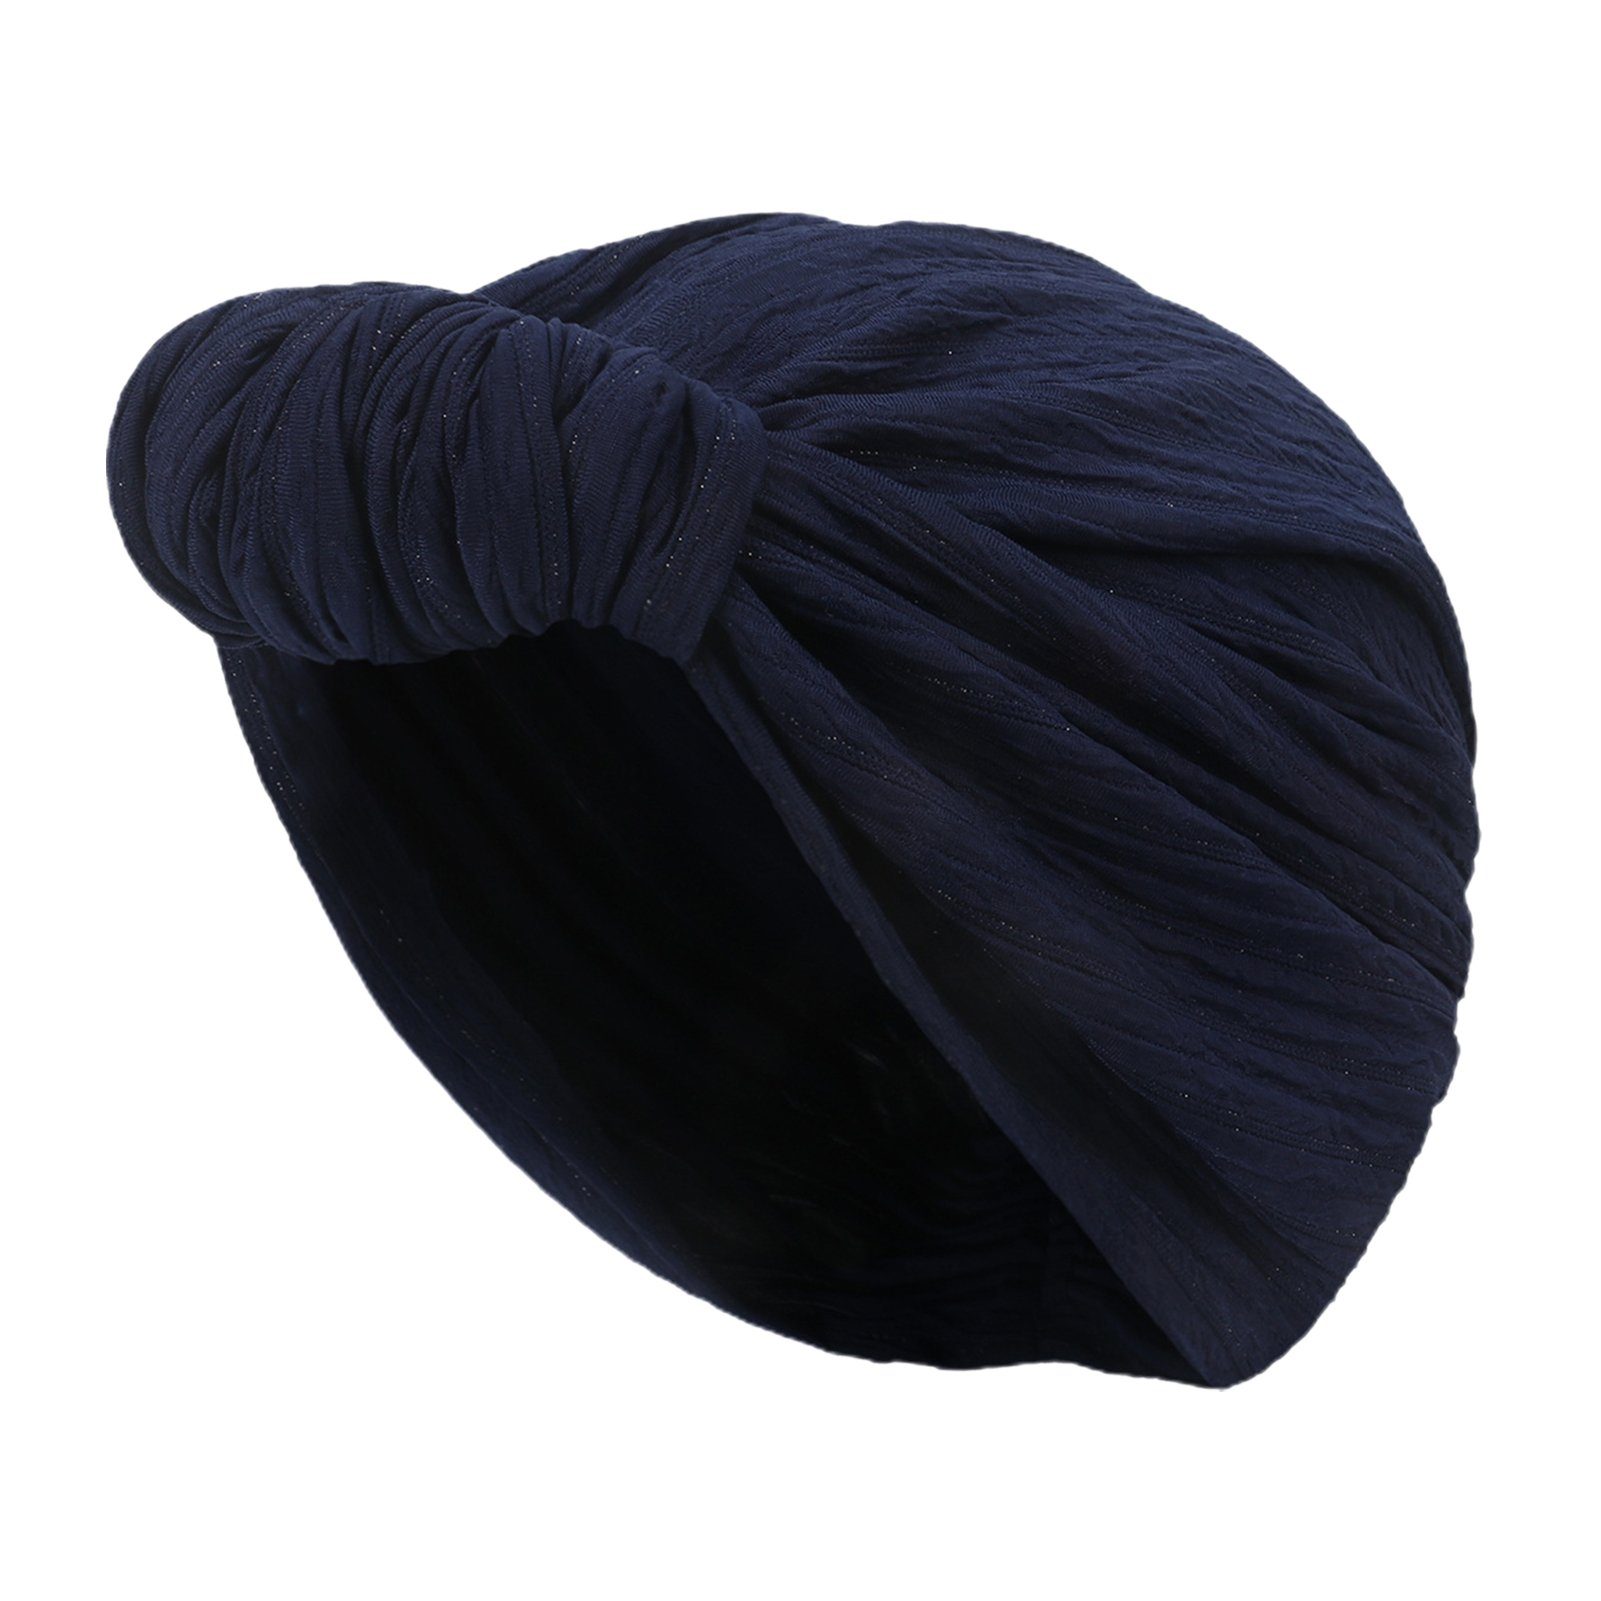 Blusmart Stirnband Modische Mütze Für Damen, Elastische Baumwolle, Knotenmütze, Stirnband Navy blau